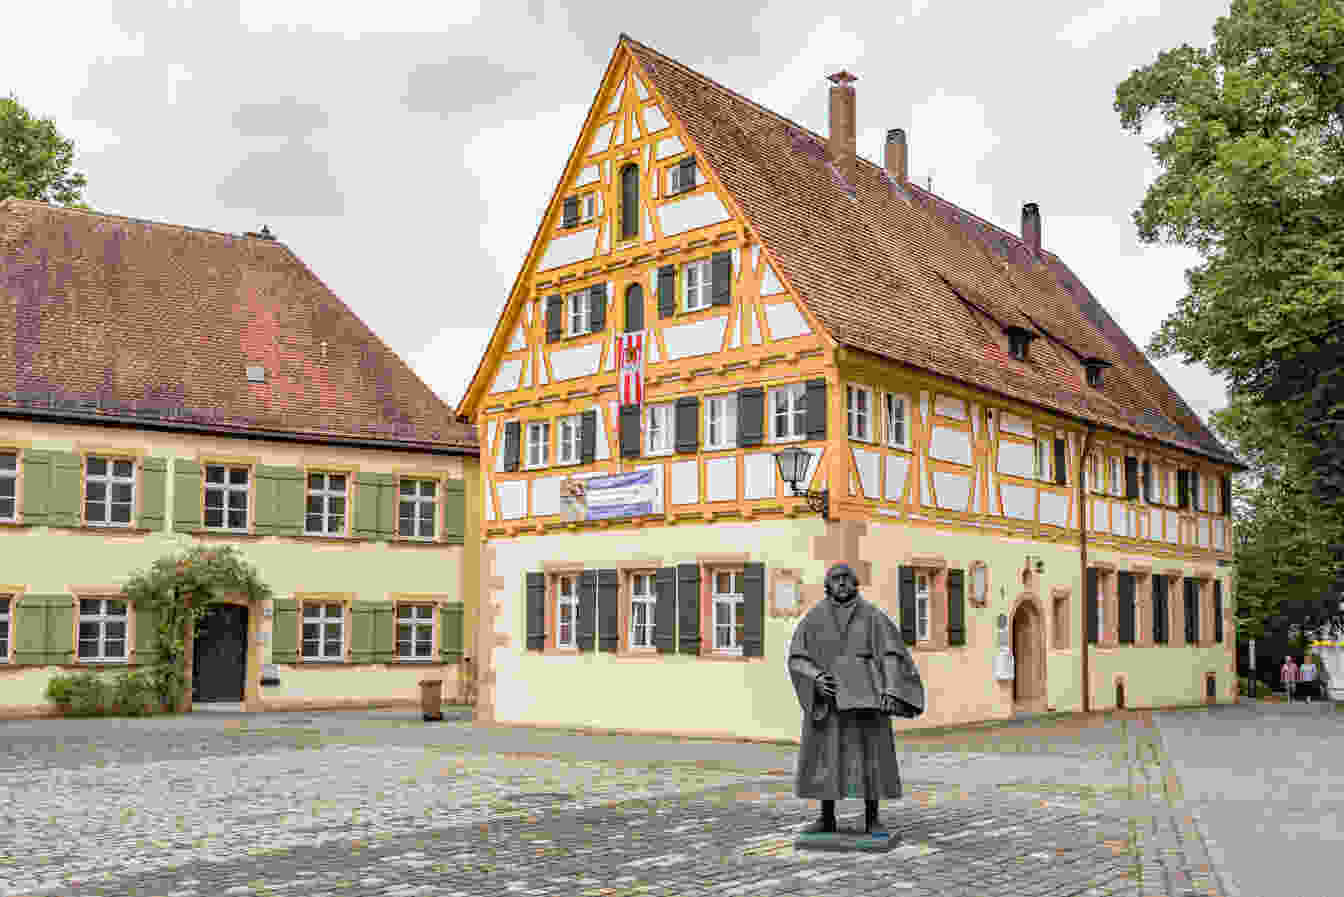 Bild der Stadt Weißenburg in Bayern